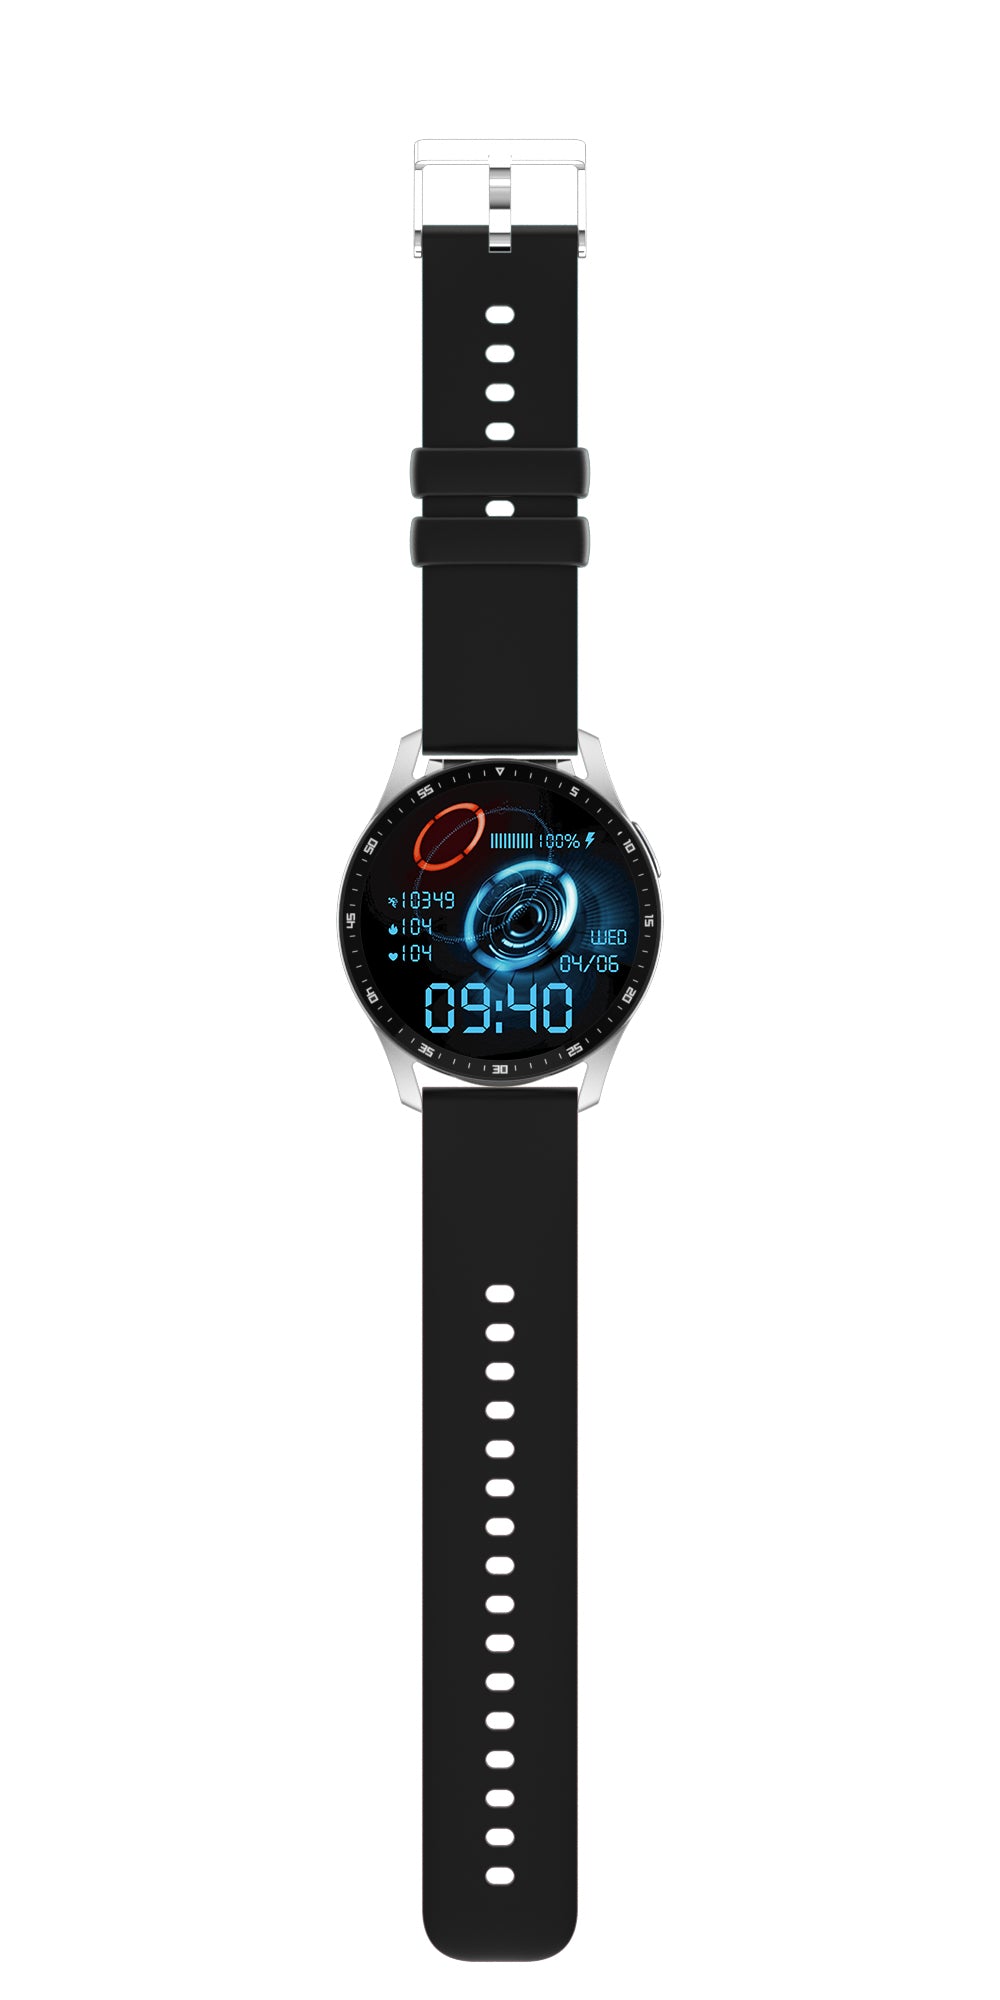 X7 earphone smart watch